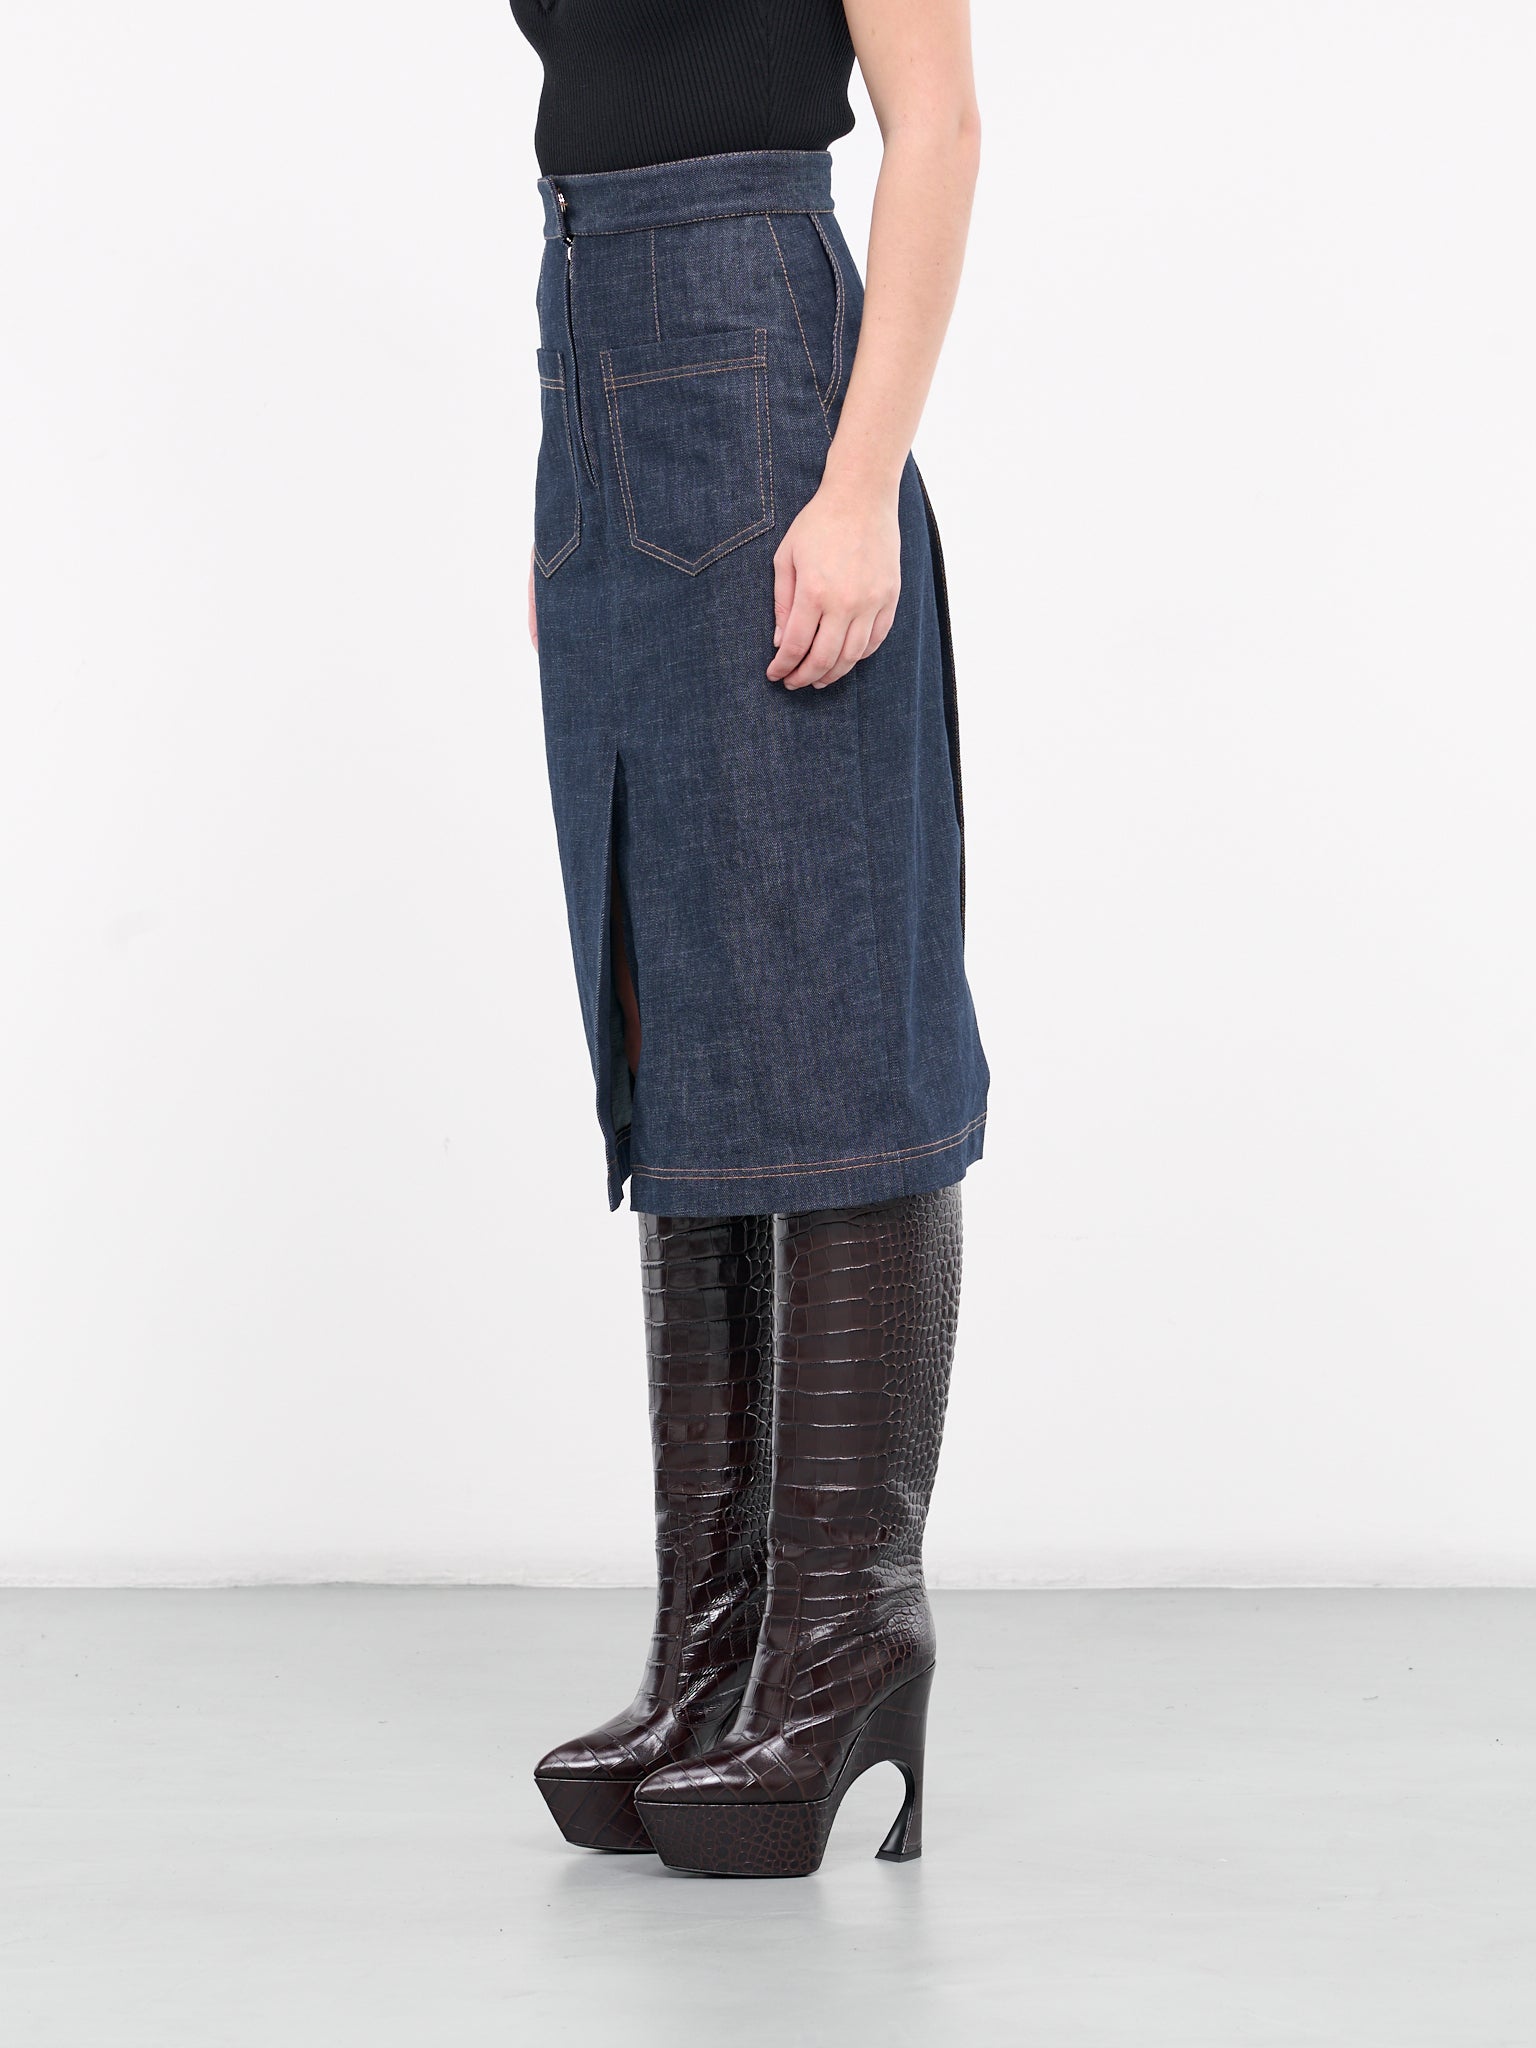 Denim Skirt (UN-SKI-01-BLUE)